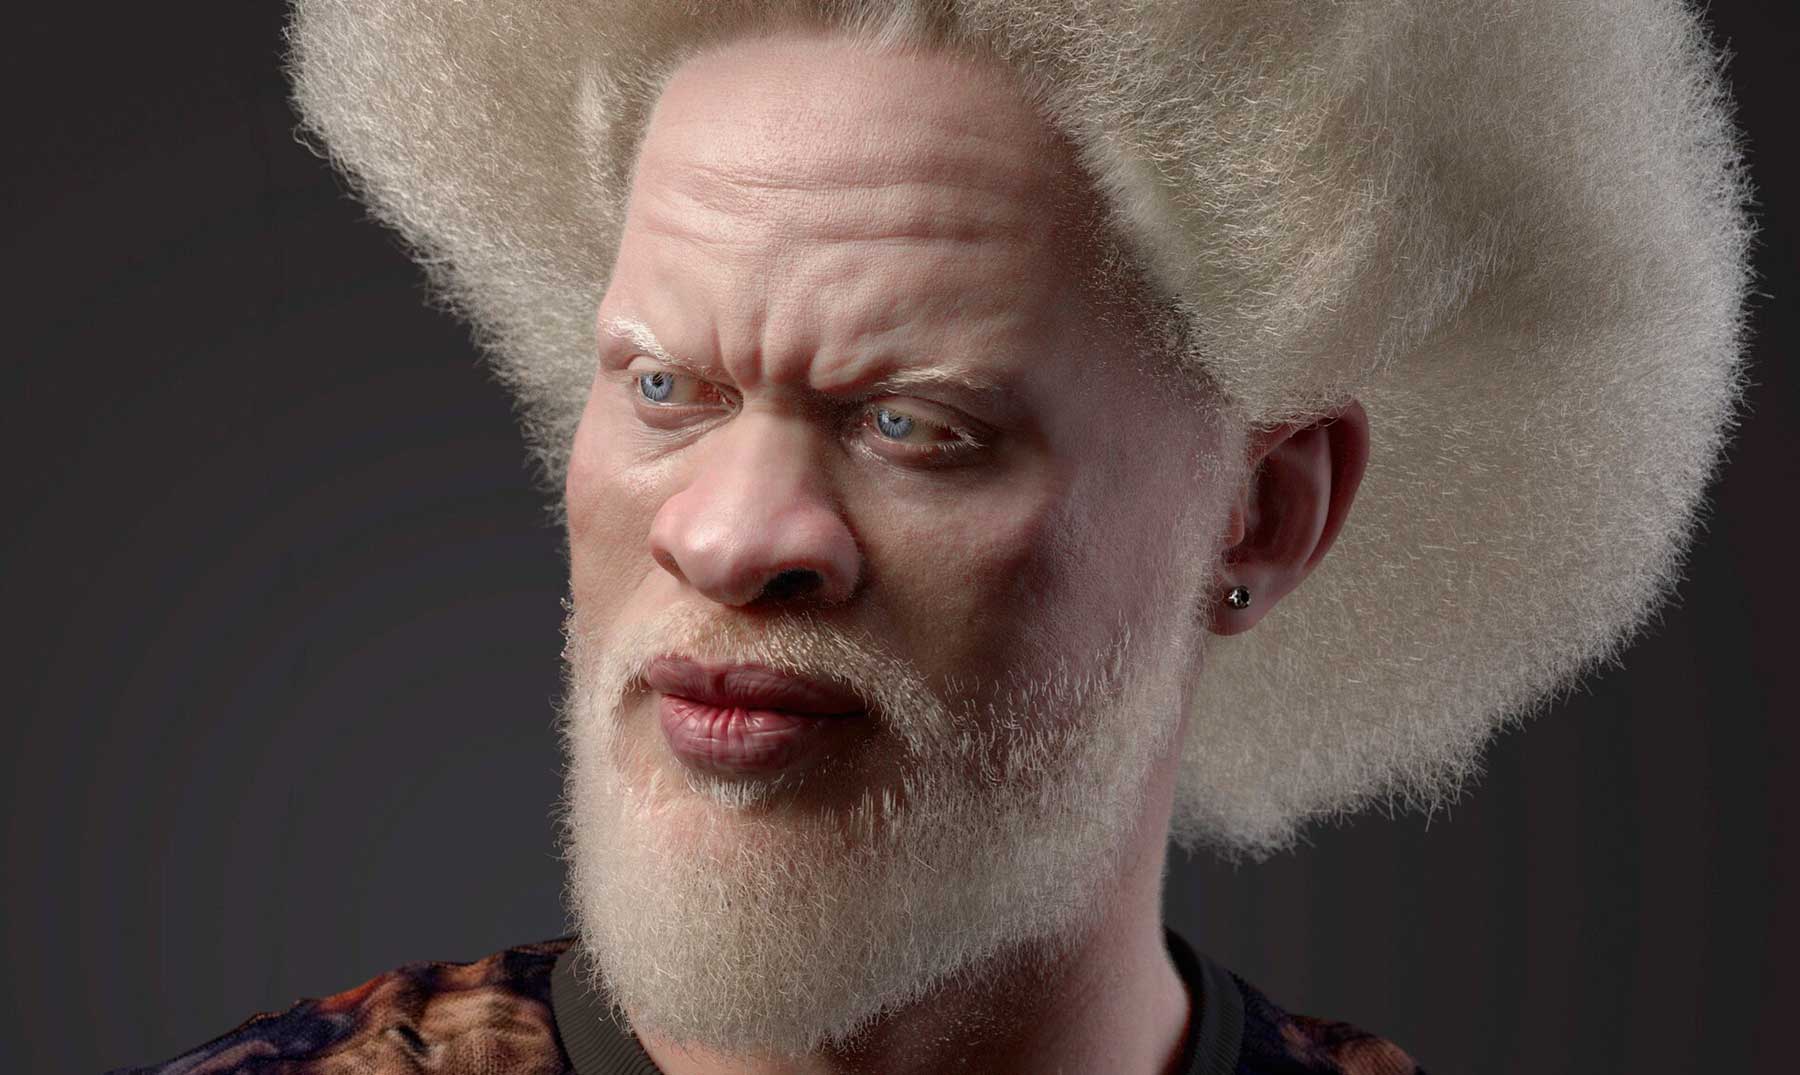 7 Albinos famosos | Los logros detrás de su apariencia